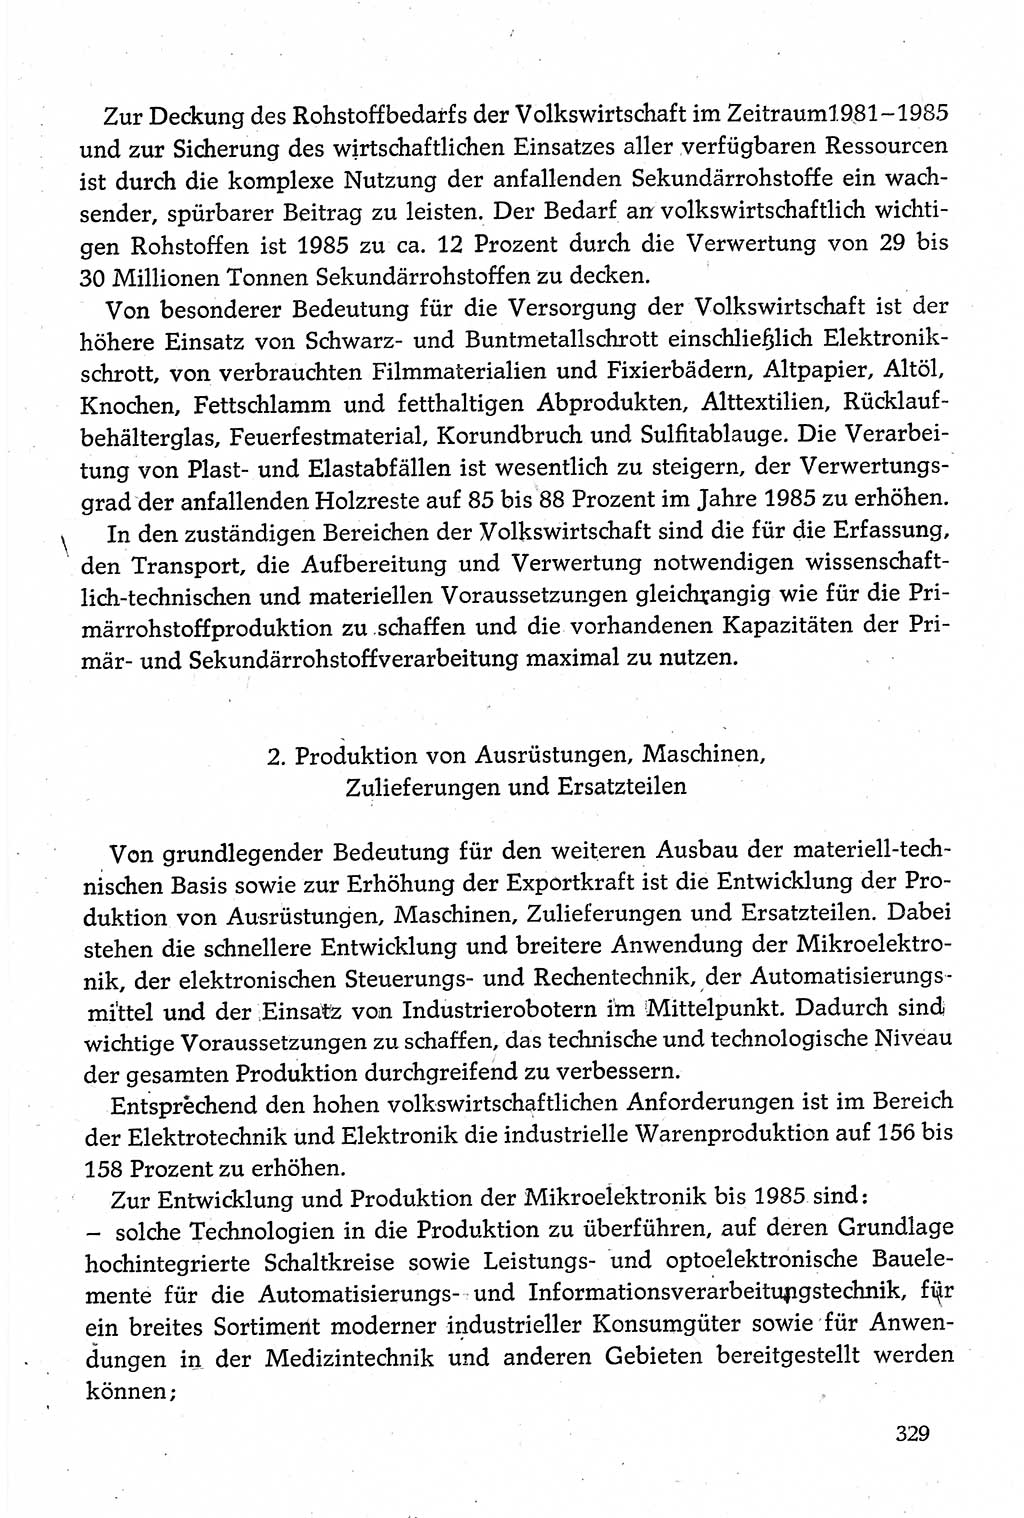 Dokumente der Sozialistischen Einheitspartei Deutschlands (SED) [Deutsche Demokratische Republik (DDR)] 1980-1981, Seite 329 (Dok. SED DDR 1980-1981, S. 329)